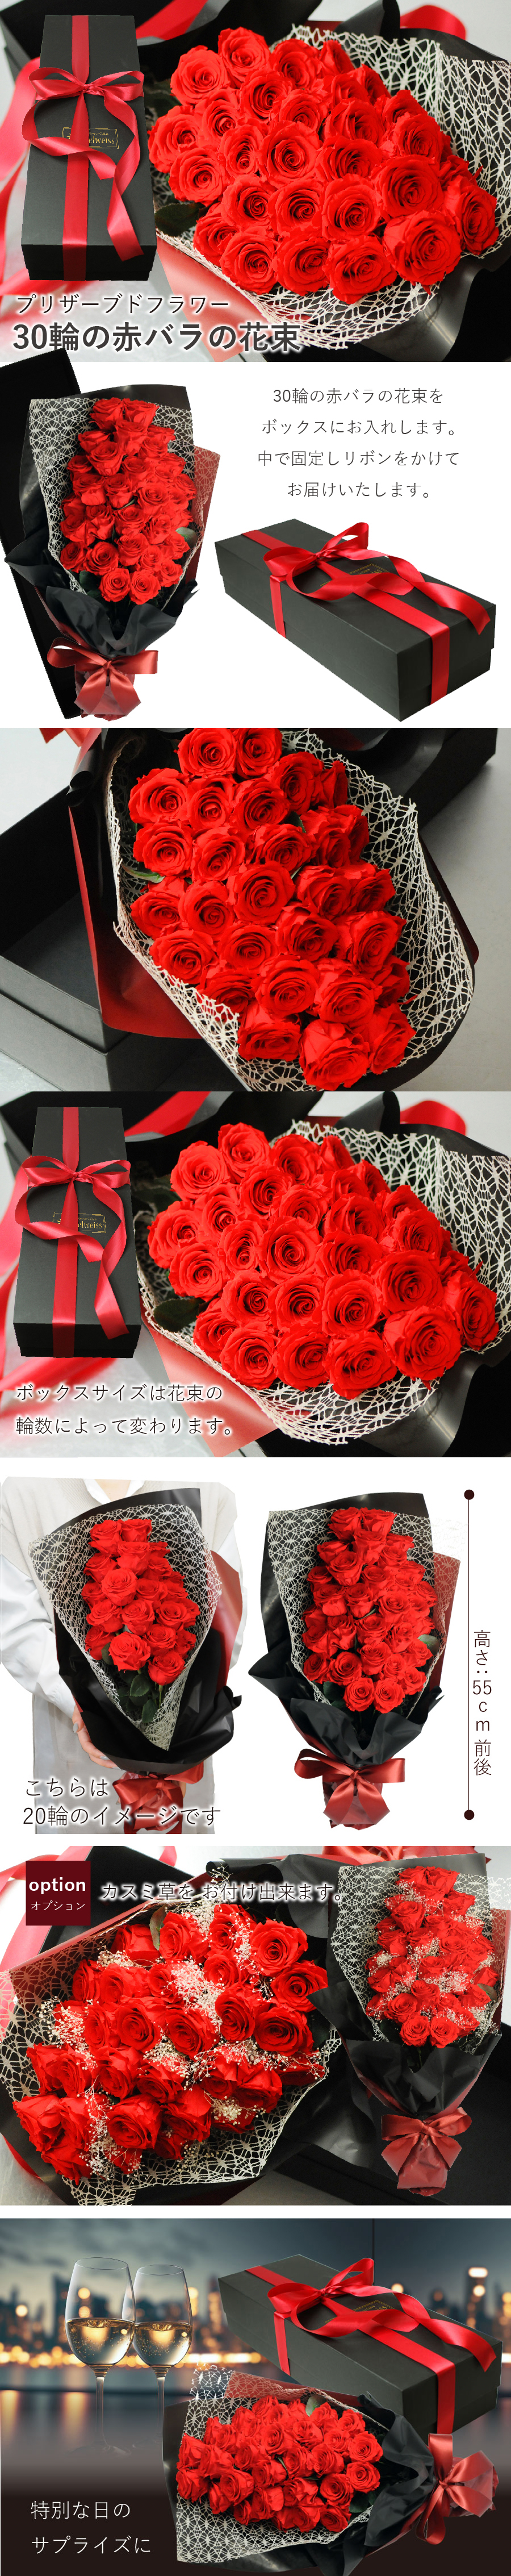 ブリザードフラワー30輪の赤バラの花束 ボックス